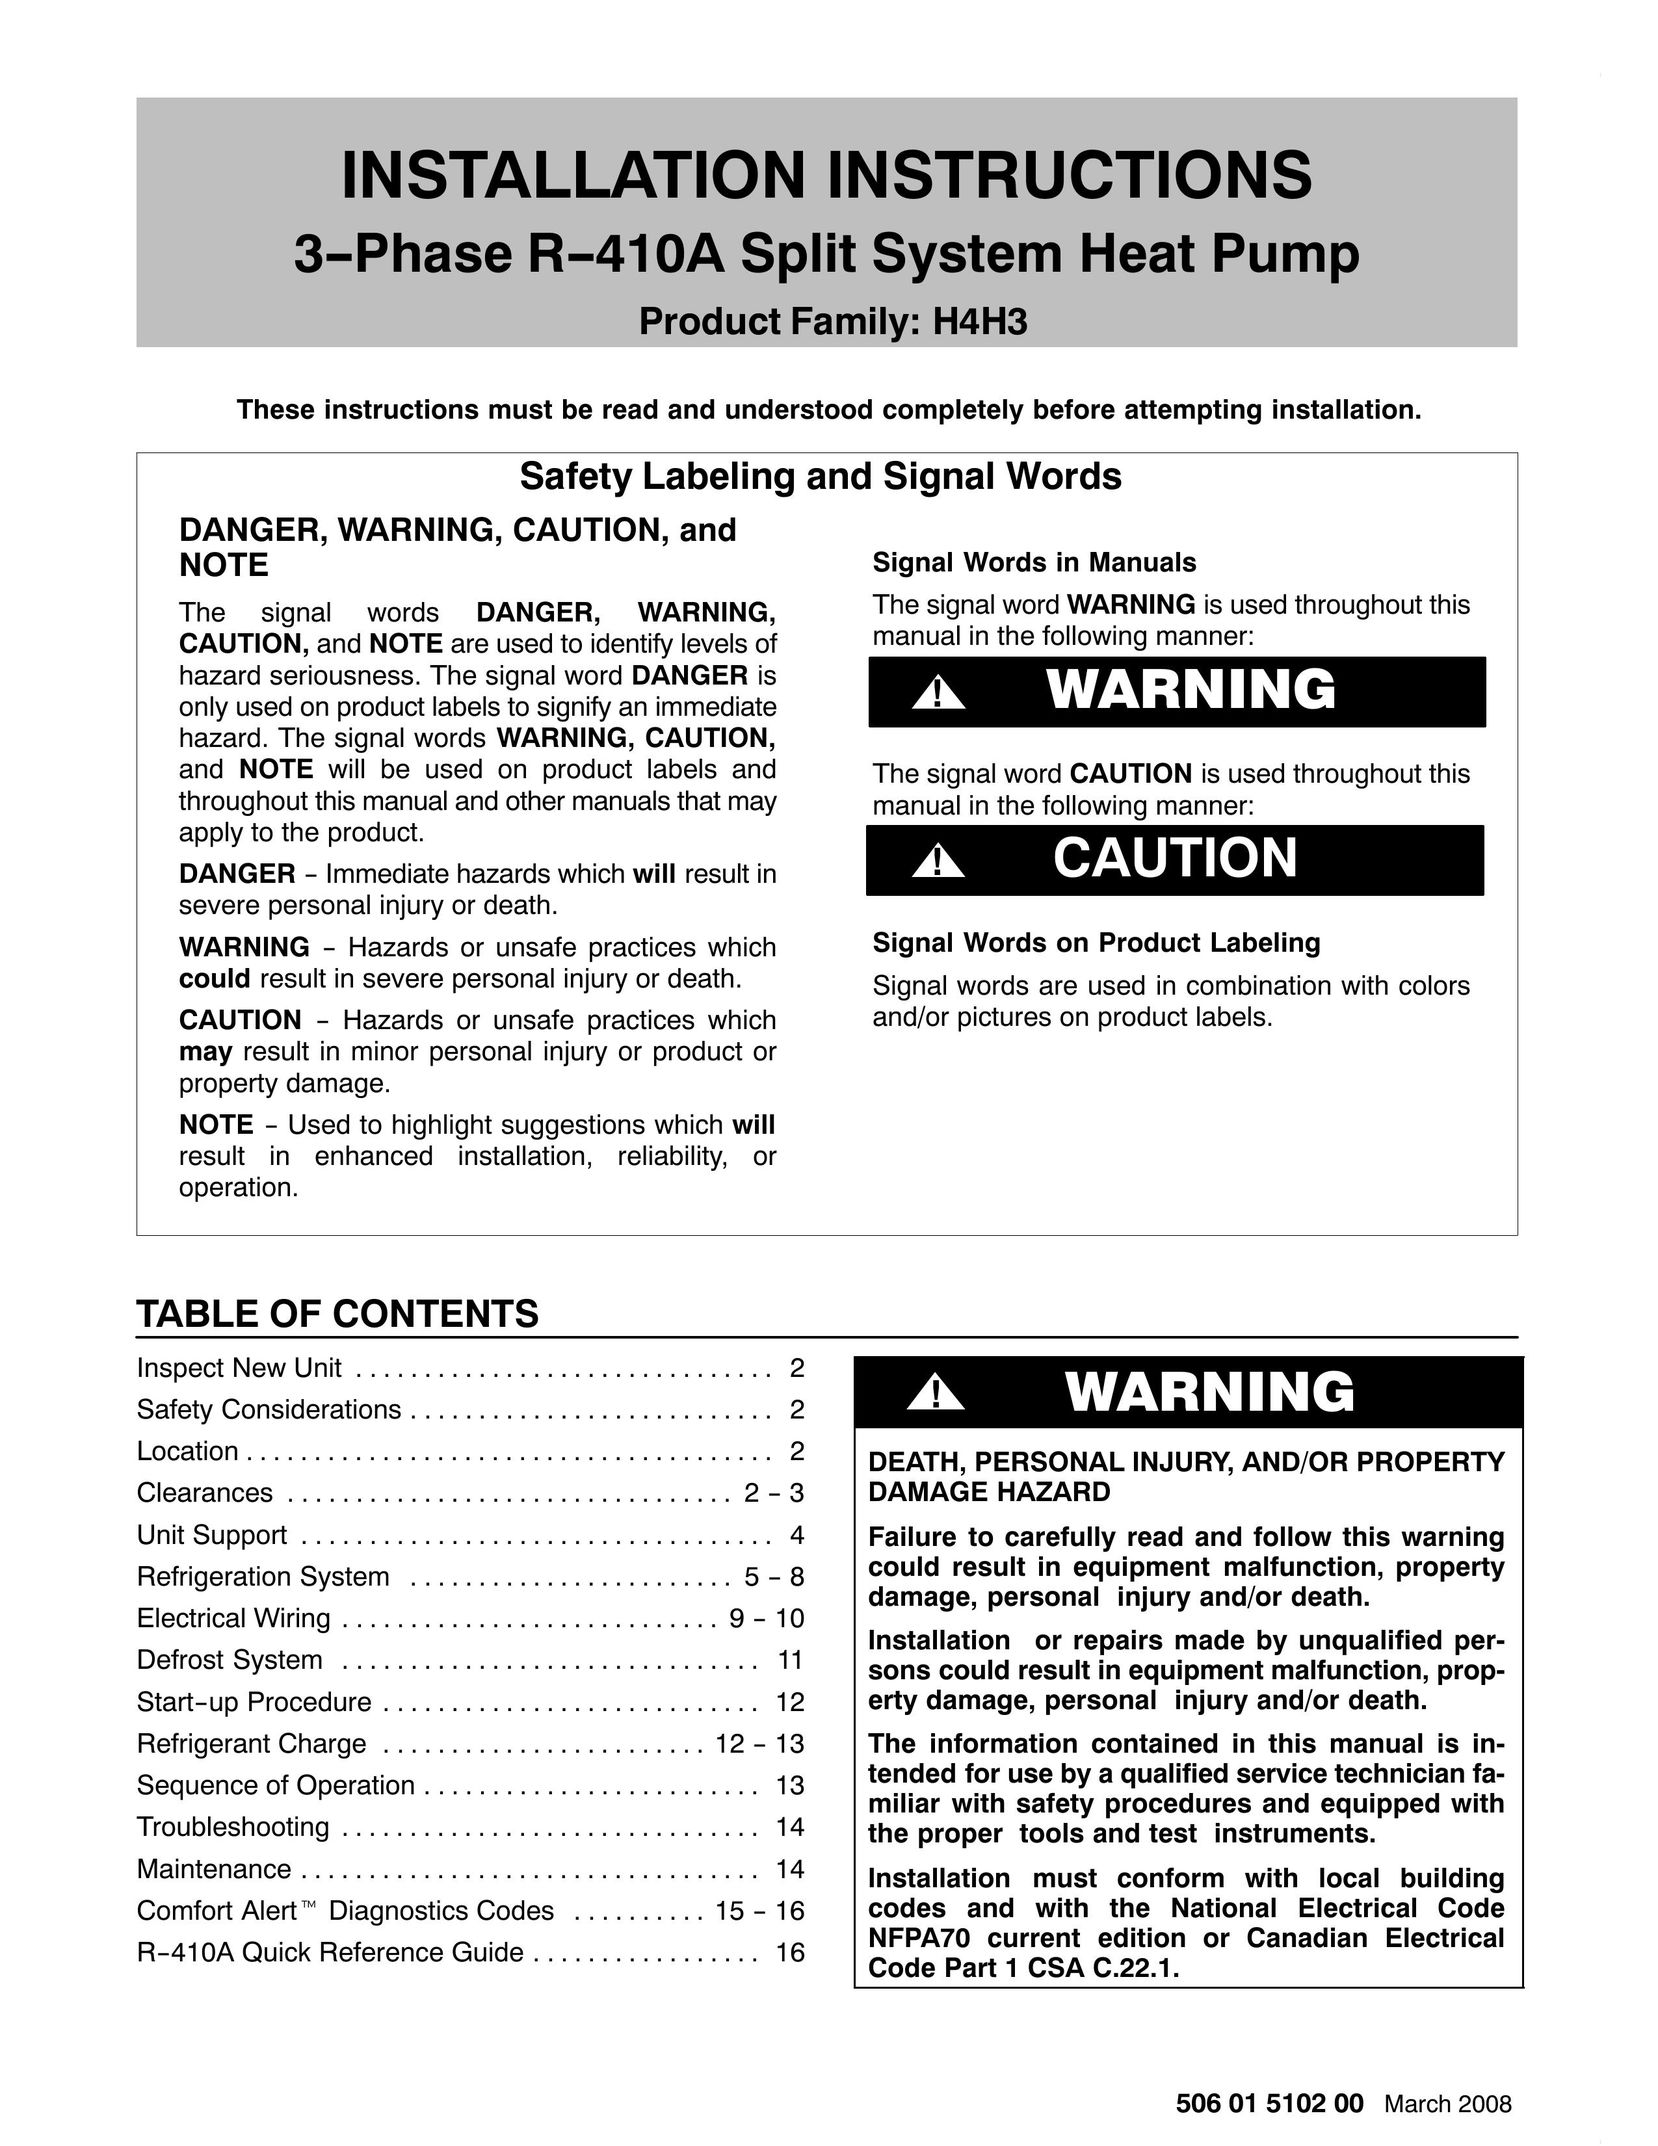 HP (Hewlett-Packard) H4H3 Heat Pump User Manual